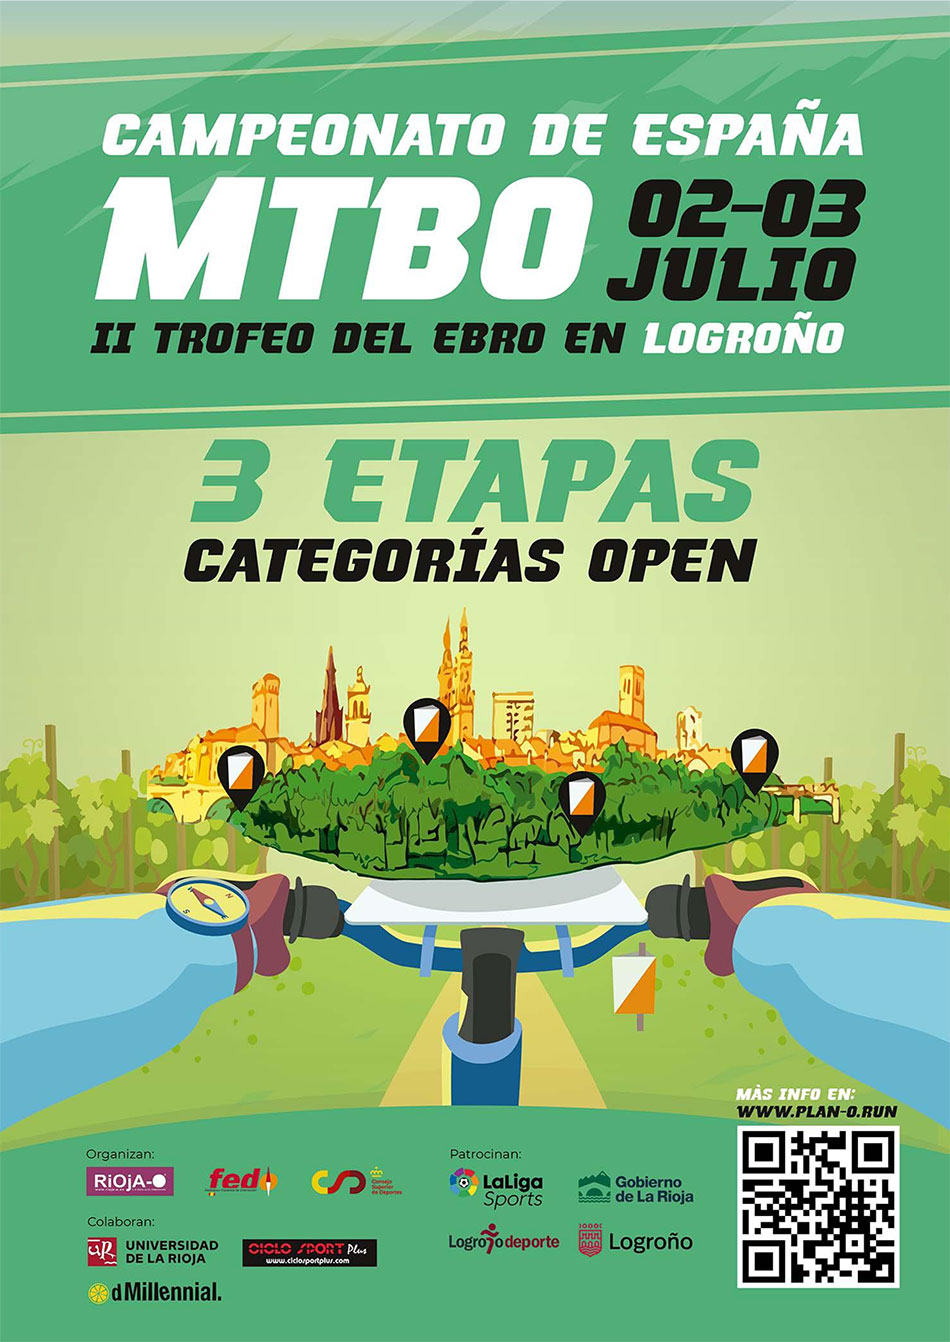 Campeonato de España de MTBO 2022 - Logroño